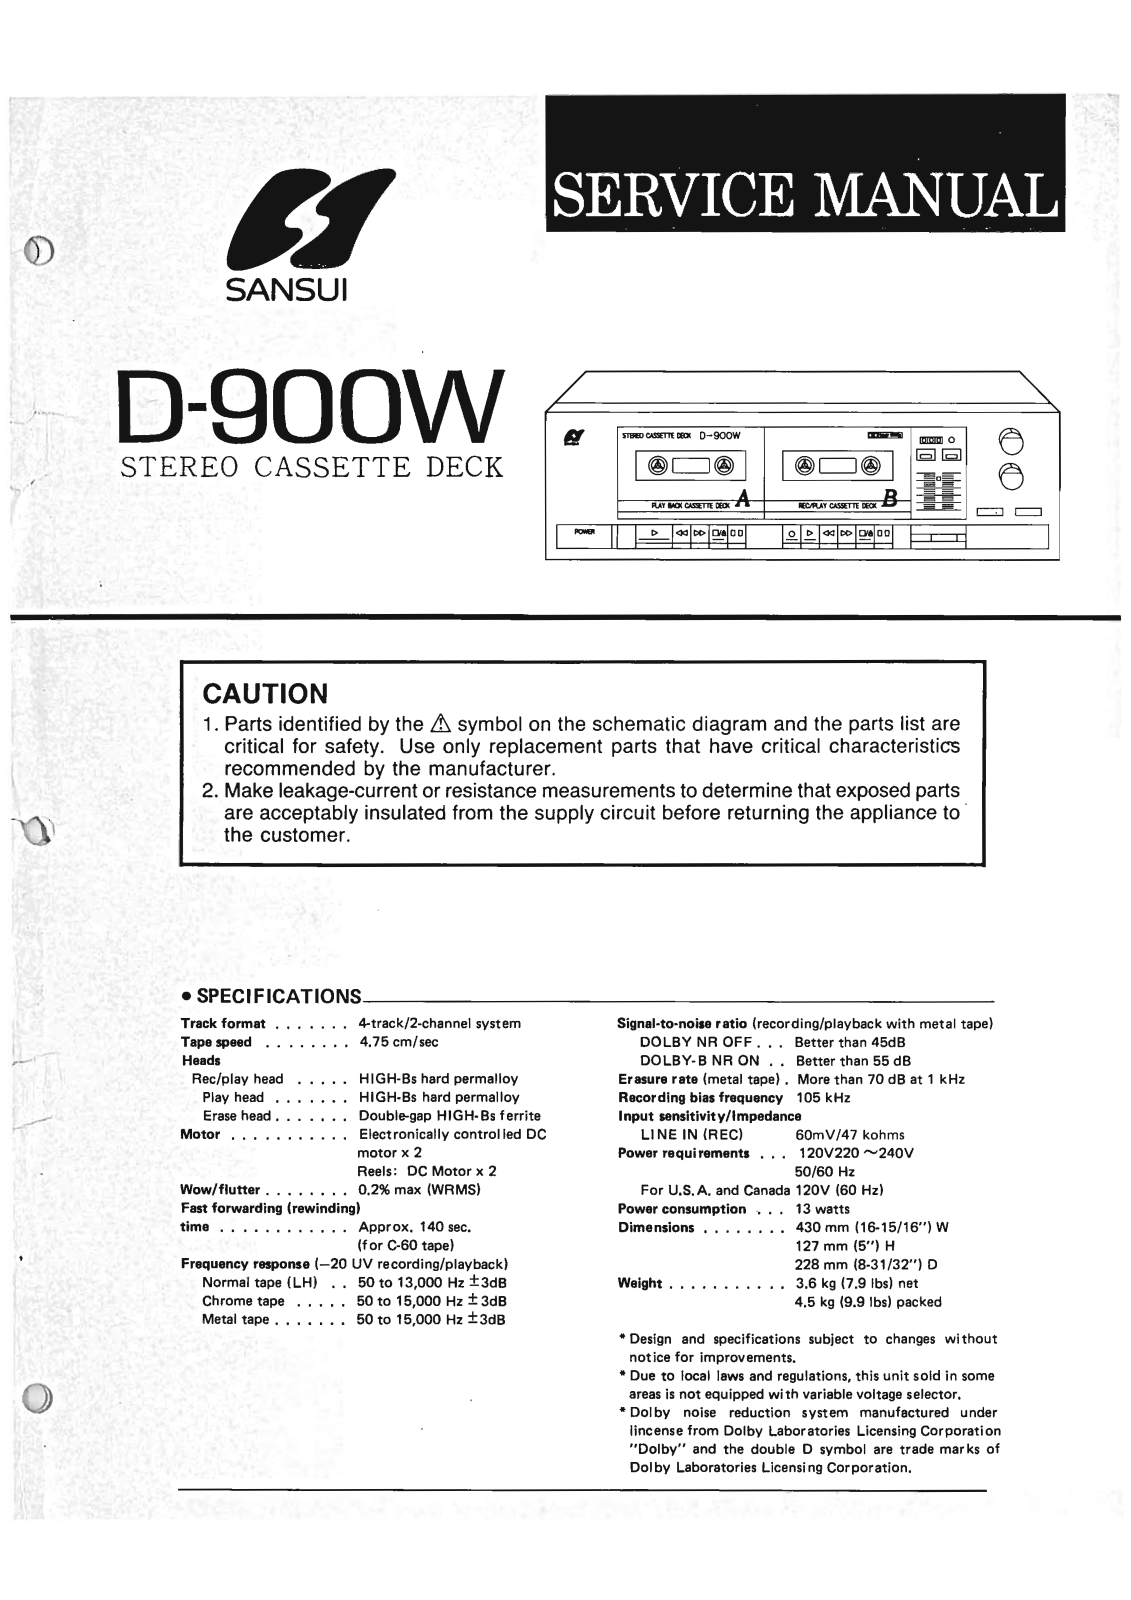 Sansui D-900-W Service Manual